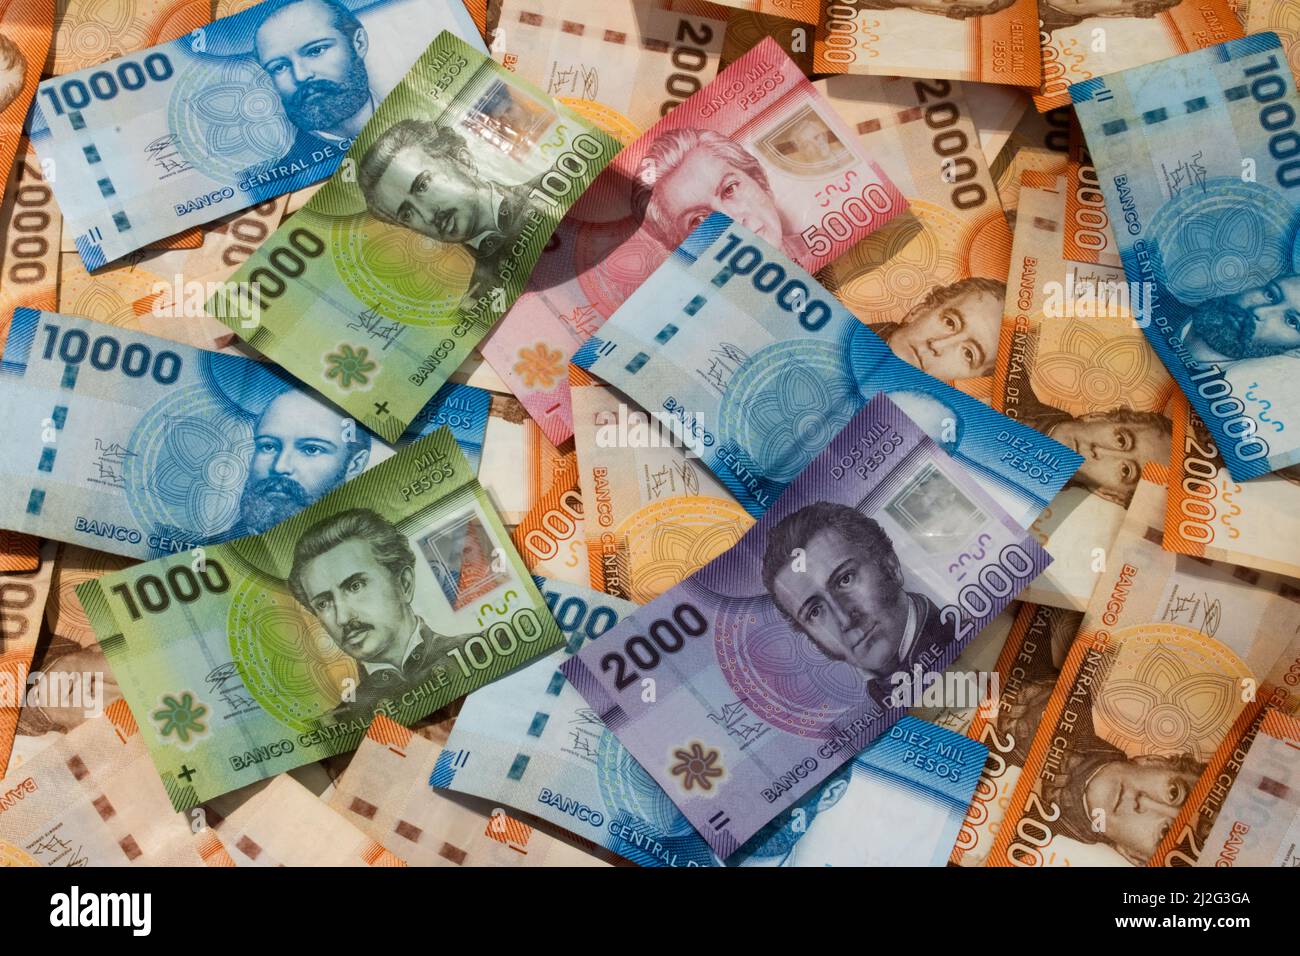 Chilenische Banknoten. Chiles Papiergeld war auf einem Tisch verstreut. Chilenische Geldscheine. Stockfoto